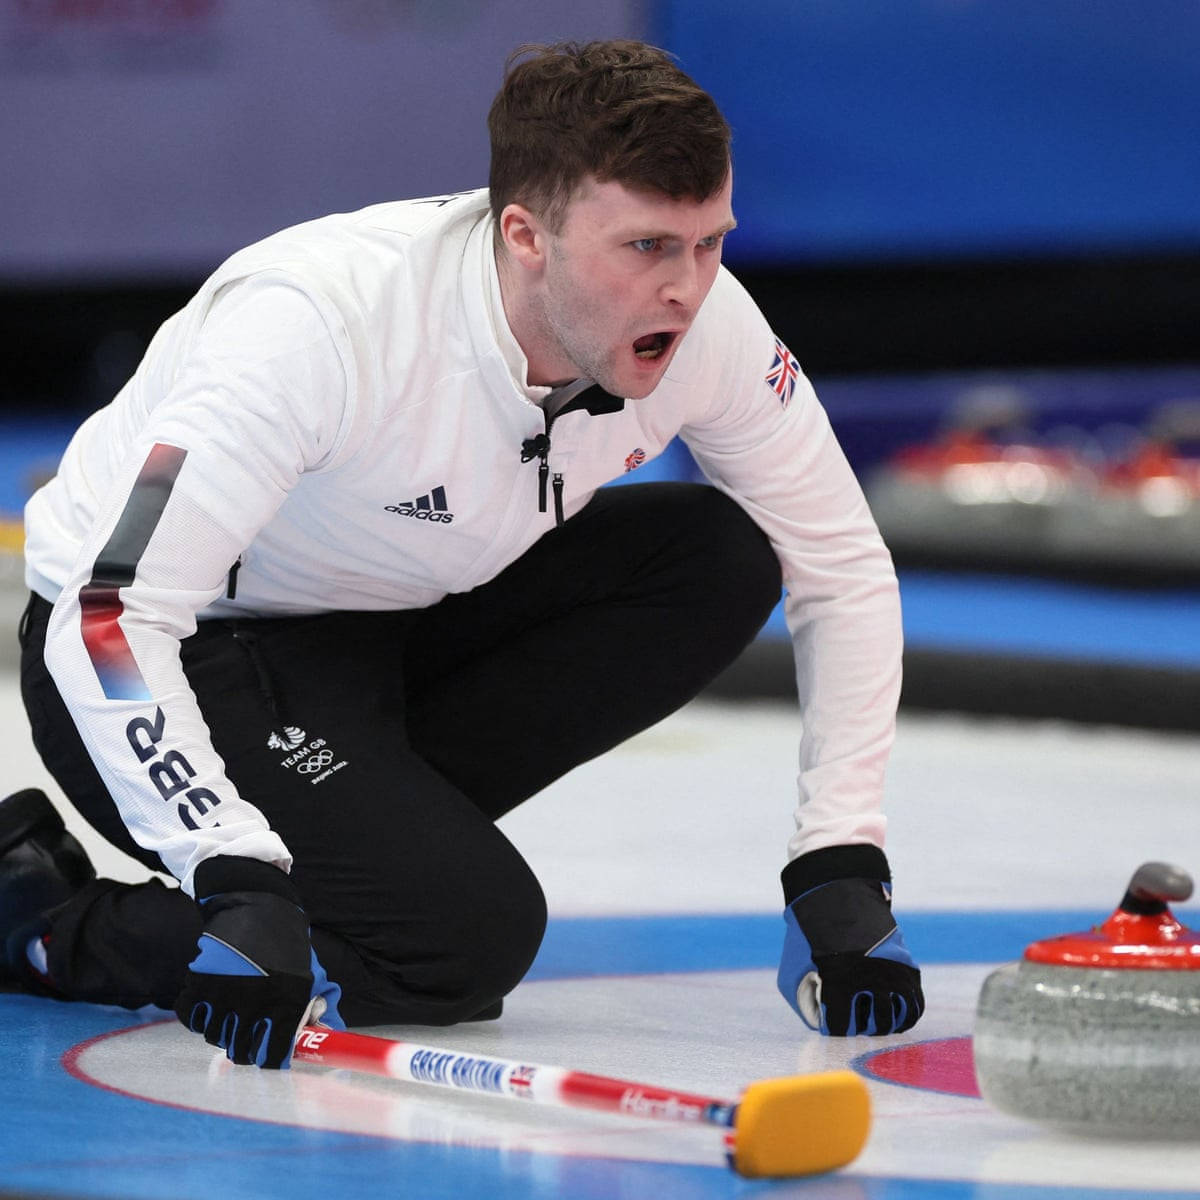 Bruce Mouat britisk Curling Athlet stræber mod større løsninger Wallpaper